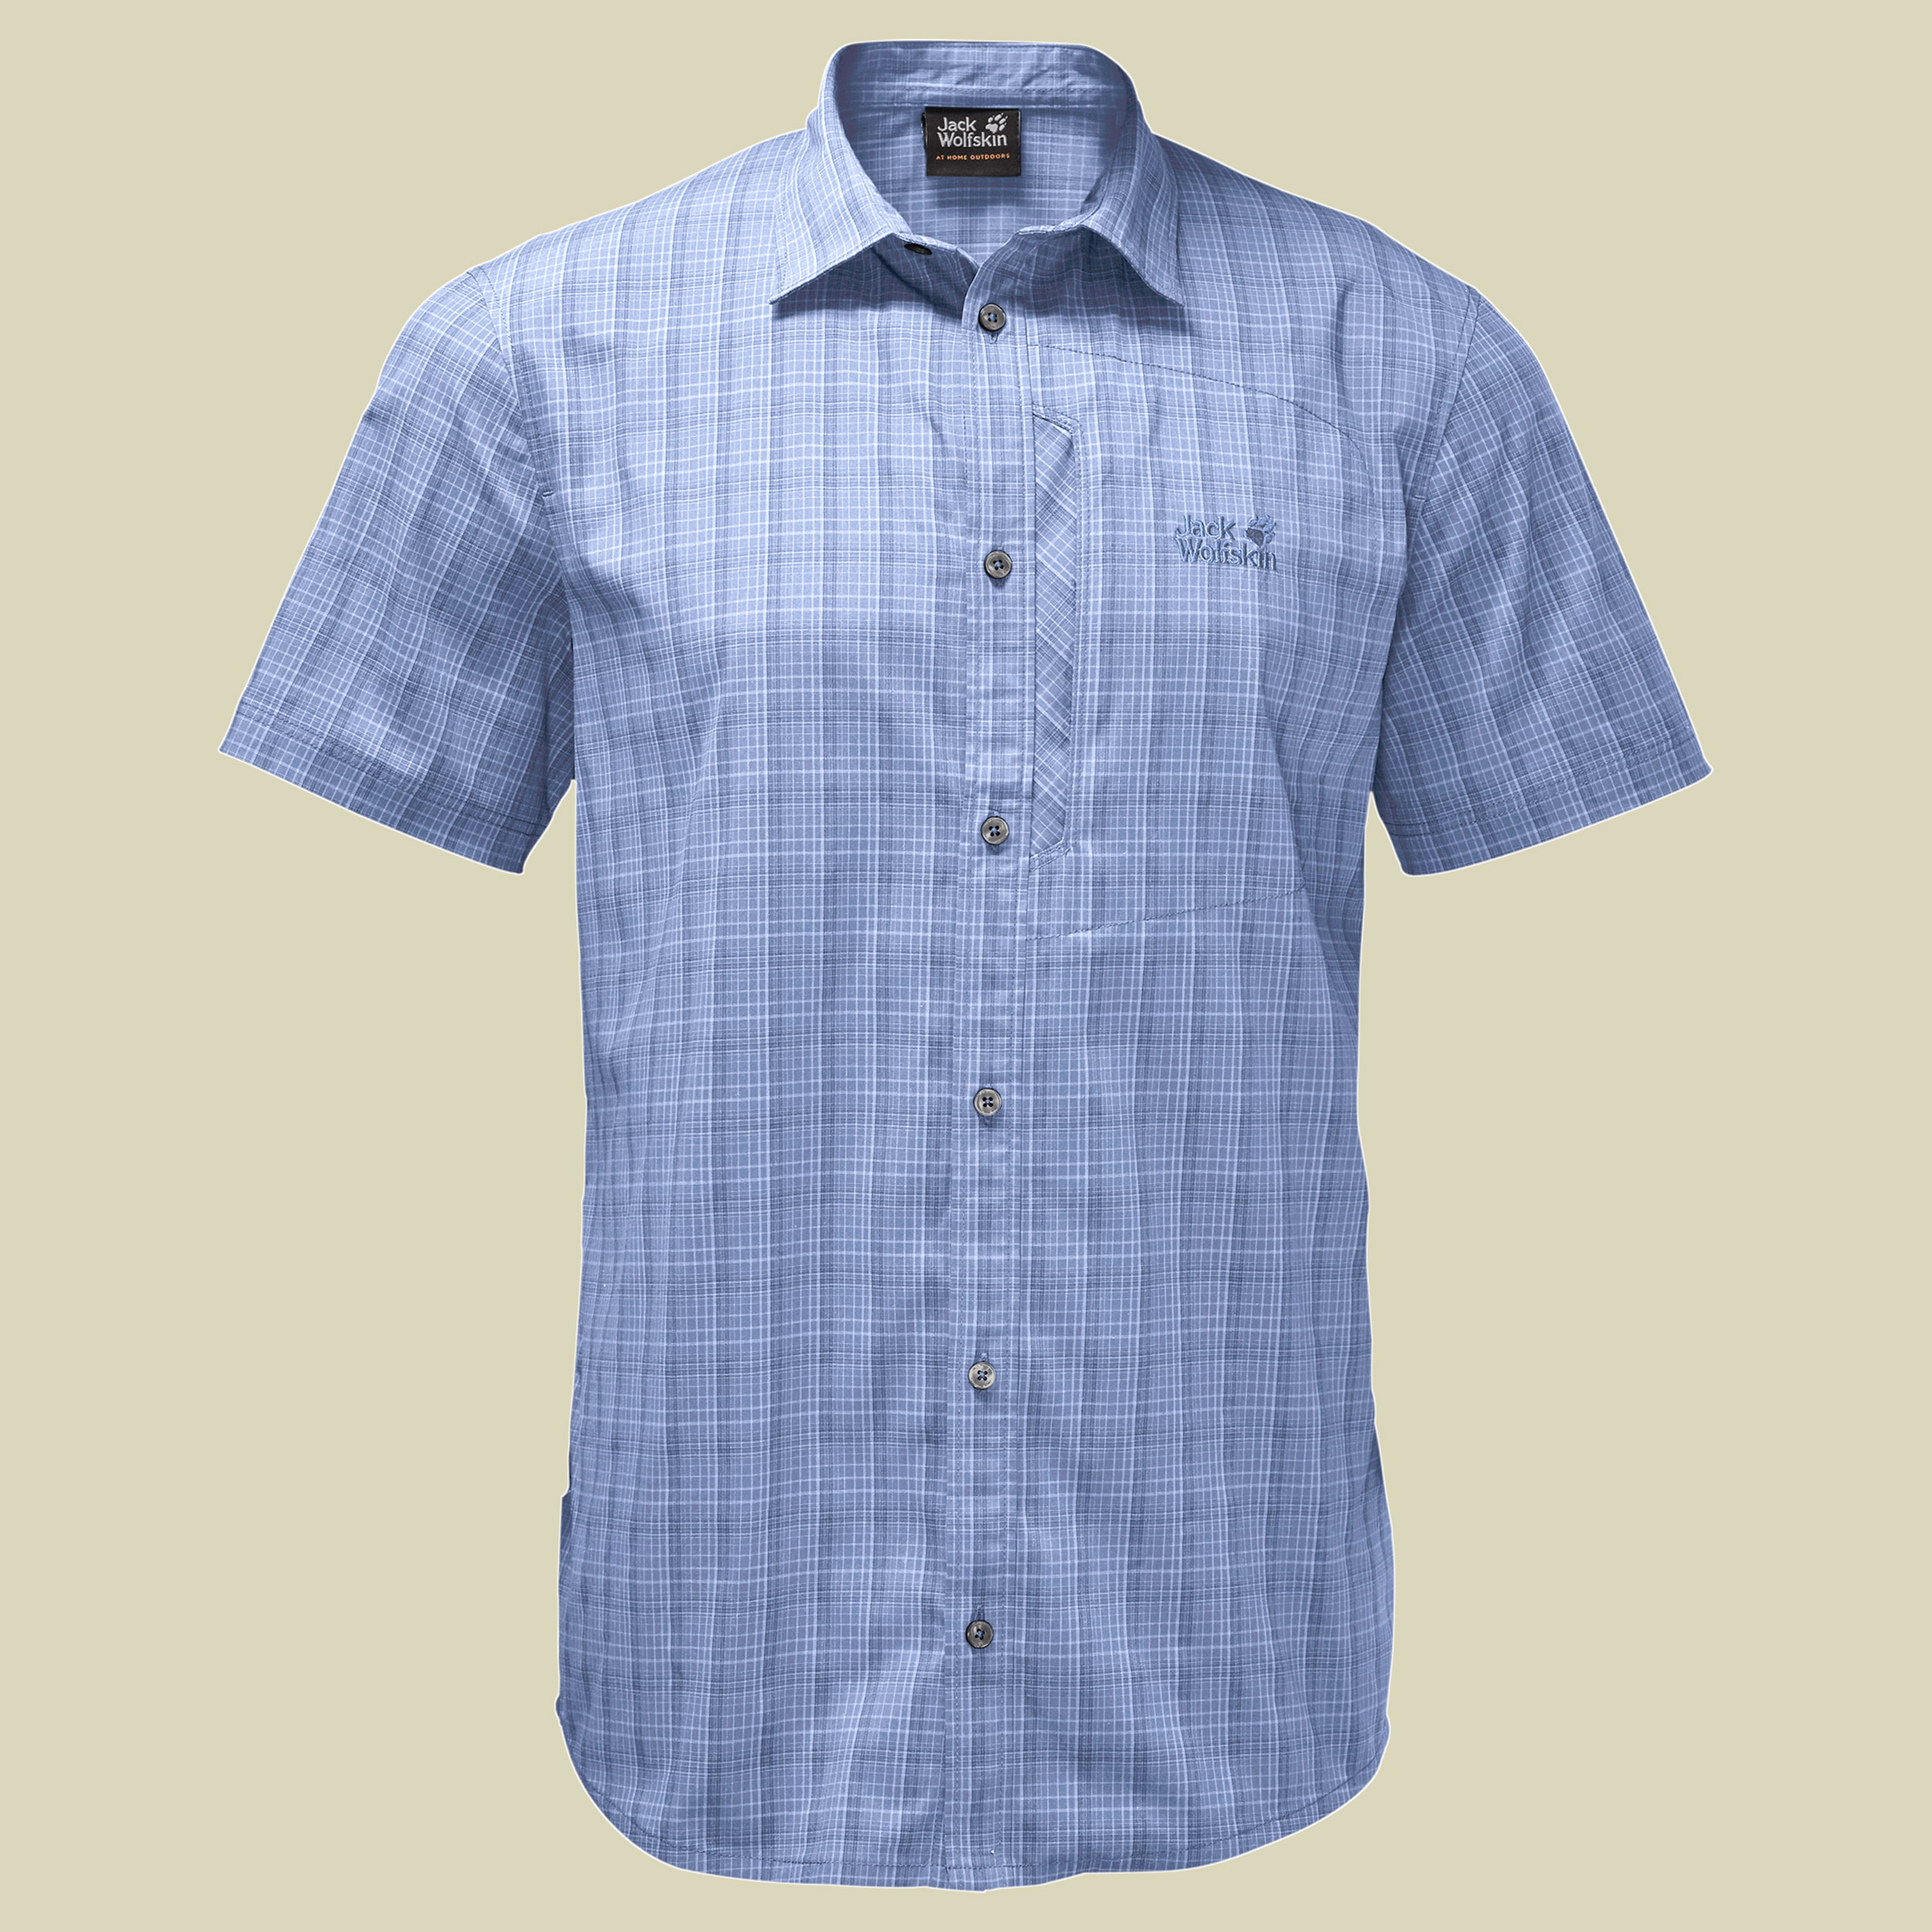 Rays Stretch Vent Shirt Men Größe L Farbe shirt blue checks